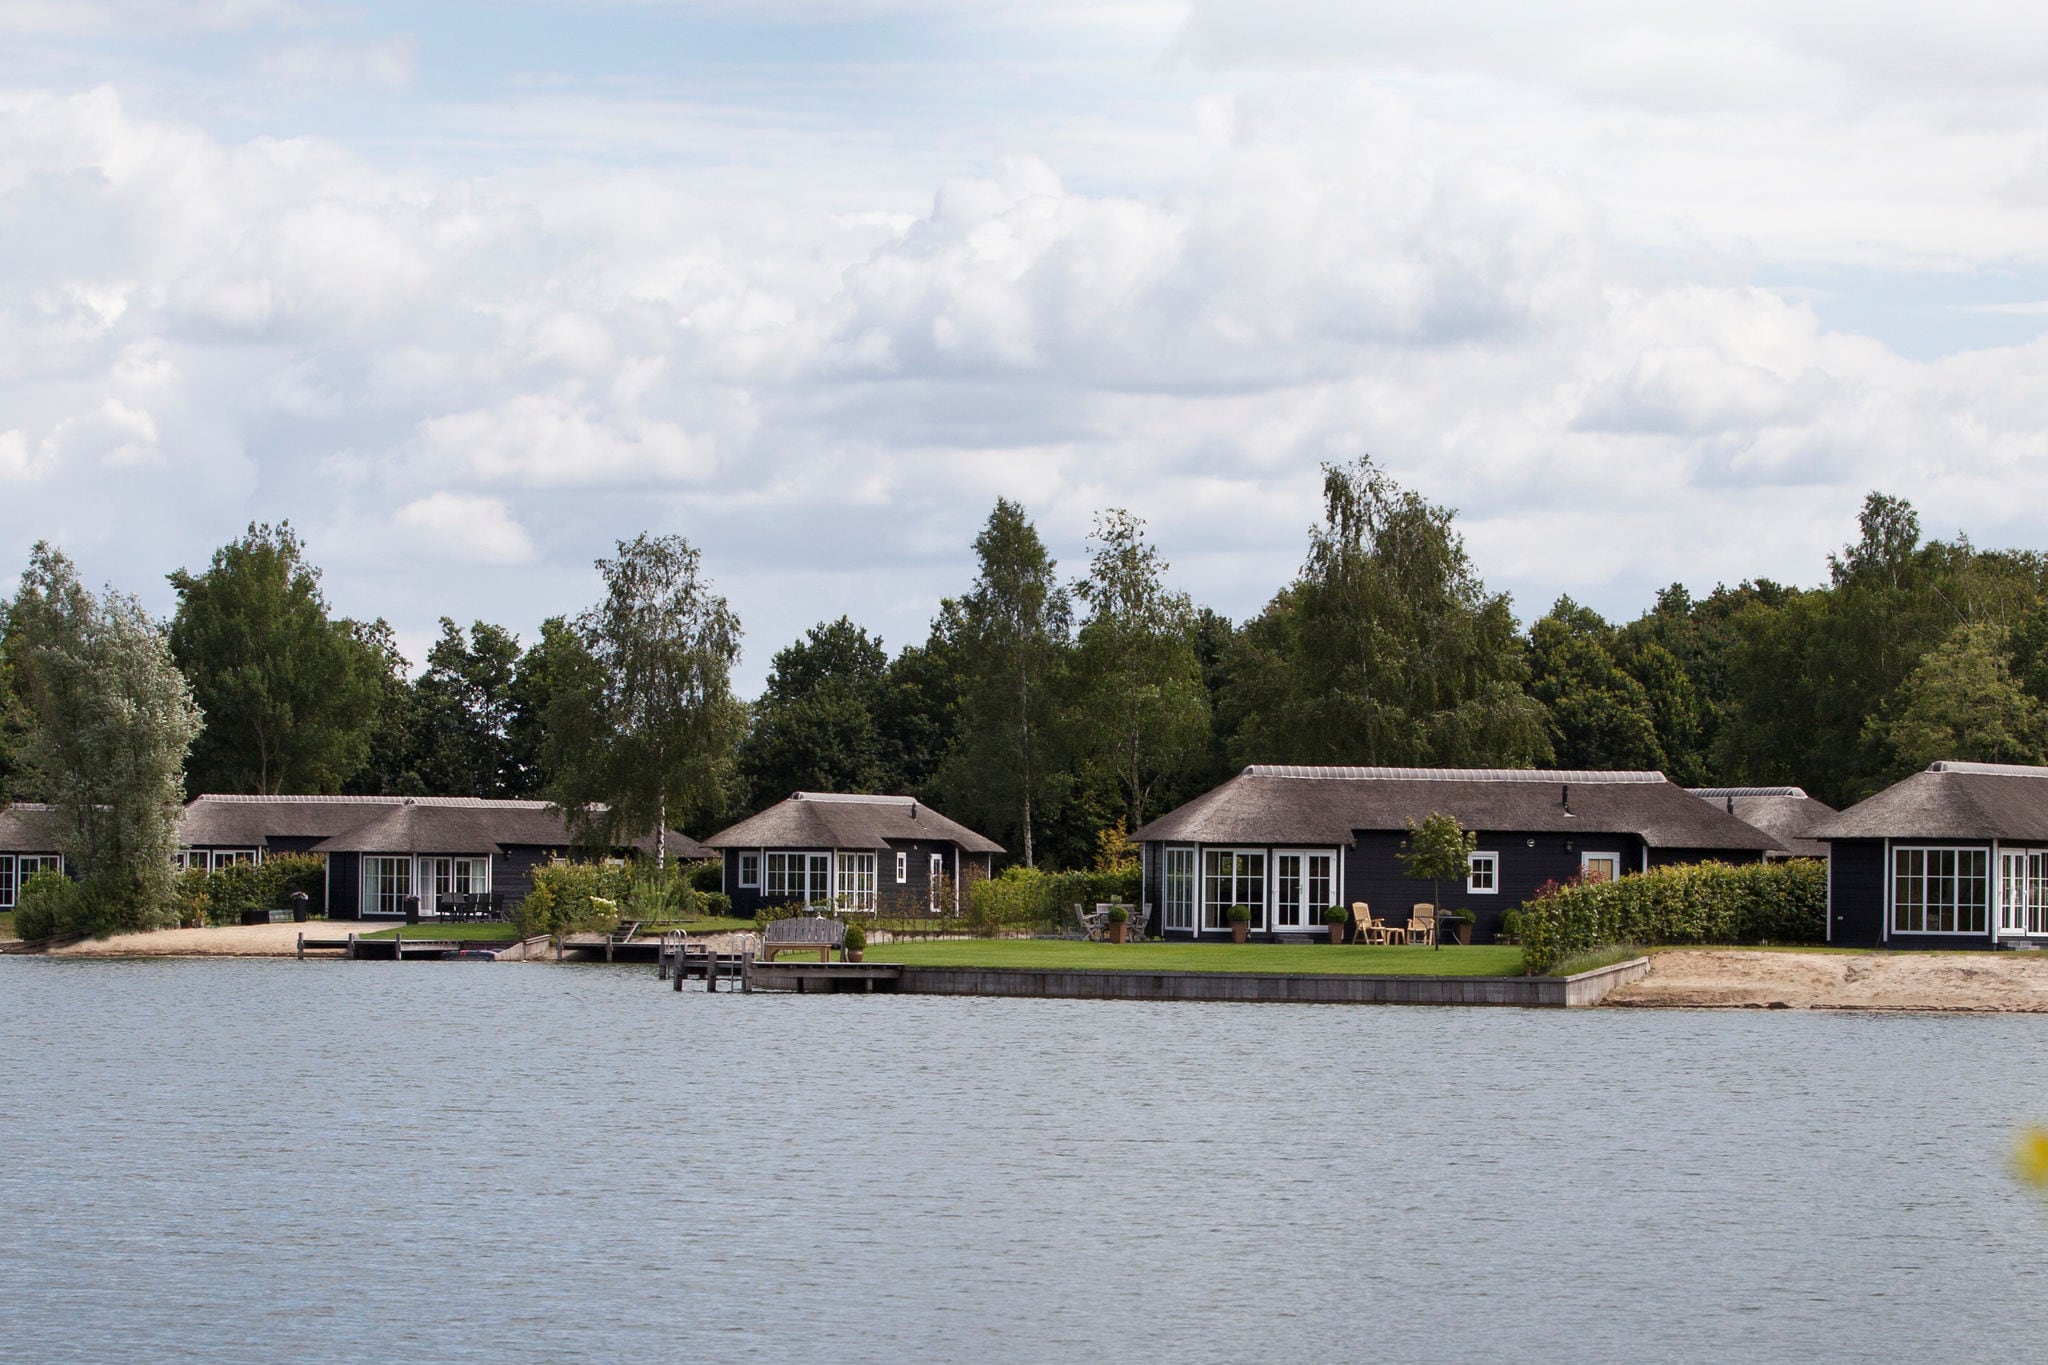 Pavillon de luxe climatisé, dans un parc de vacances, au bord d'un lac